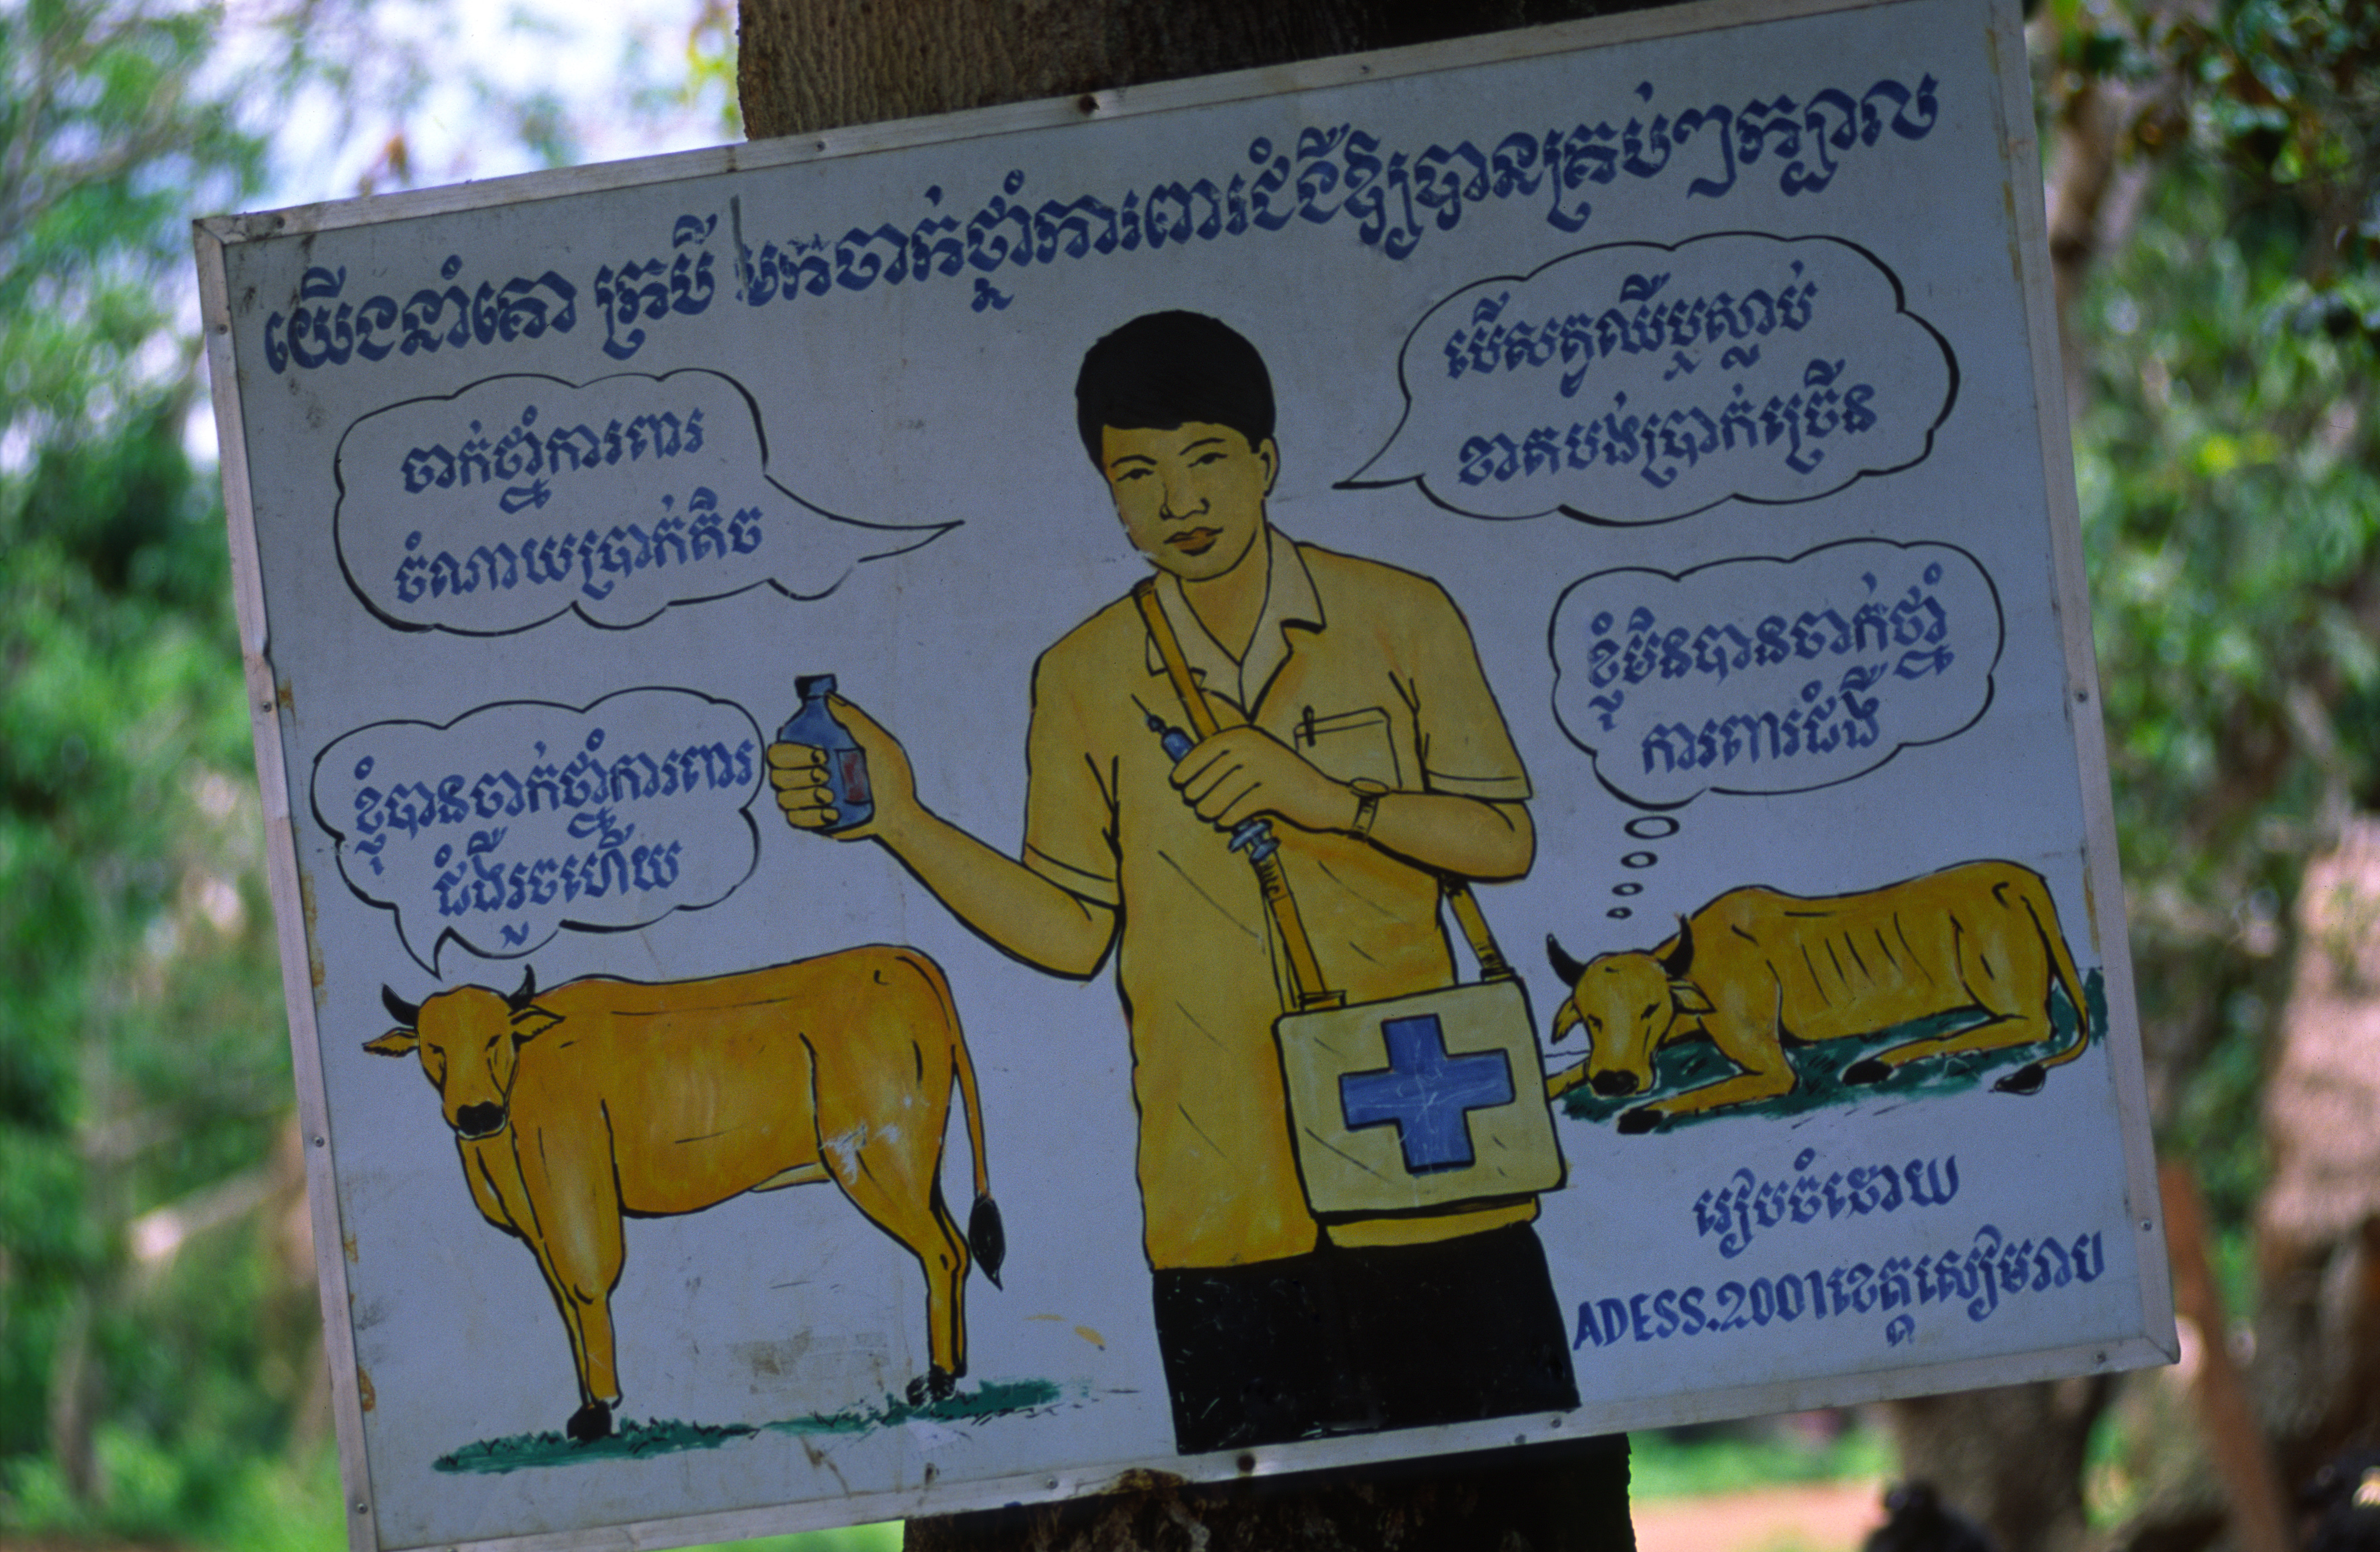 Szarvasmarhák védőoltására figyelmeztető kampány Kambodzsában